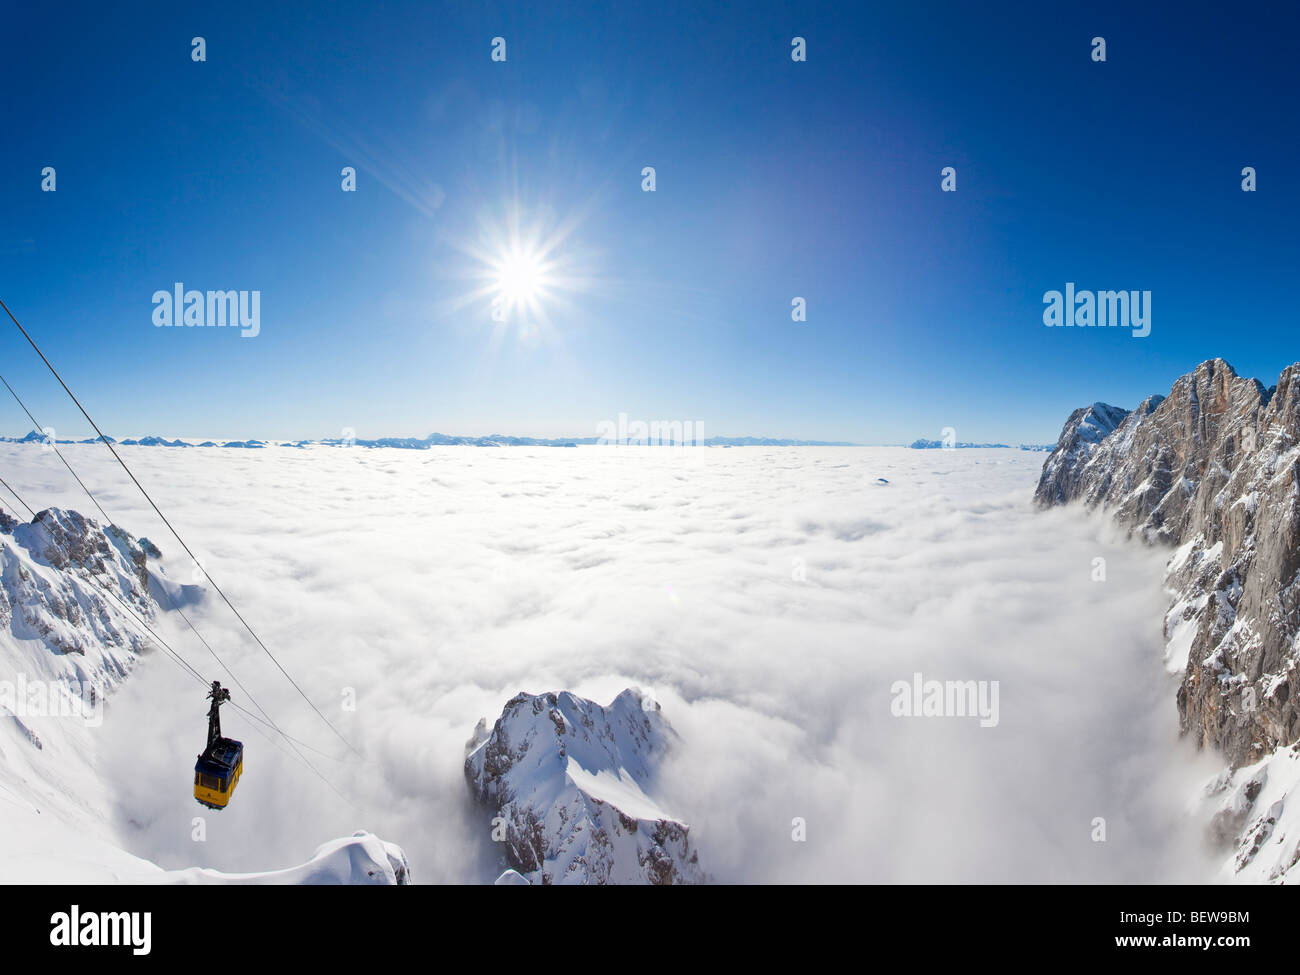 Télécabine et téléphérique au-dessus de nuages à l'Dachsteingebirge, Ramsau am Dachstein, Styrie, Autriche, high angle view Banque D'Images